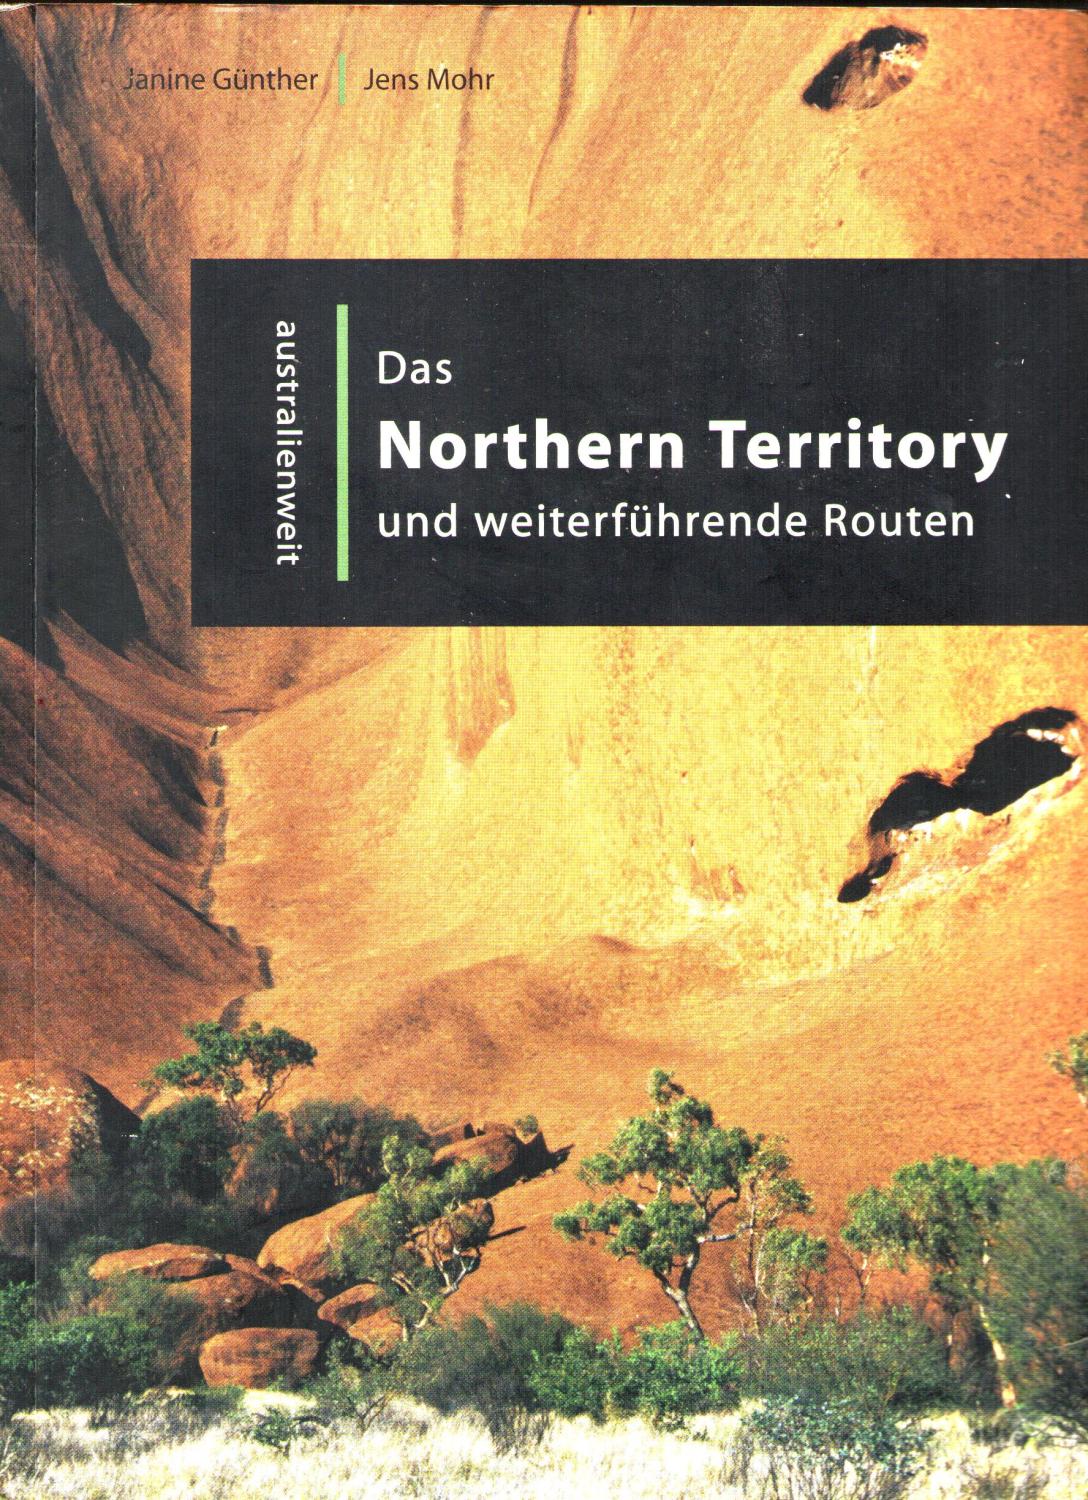 Das Northern Territory und weiterführende Routen (australienweit) - Janine Günther; Jens Mohr